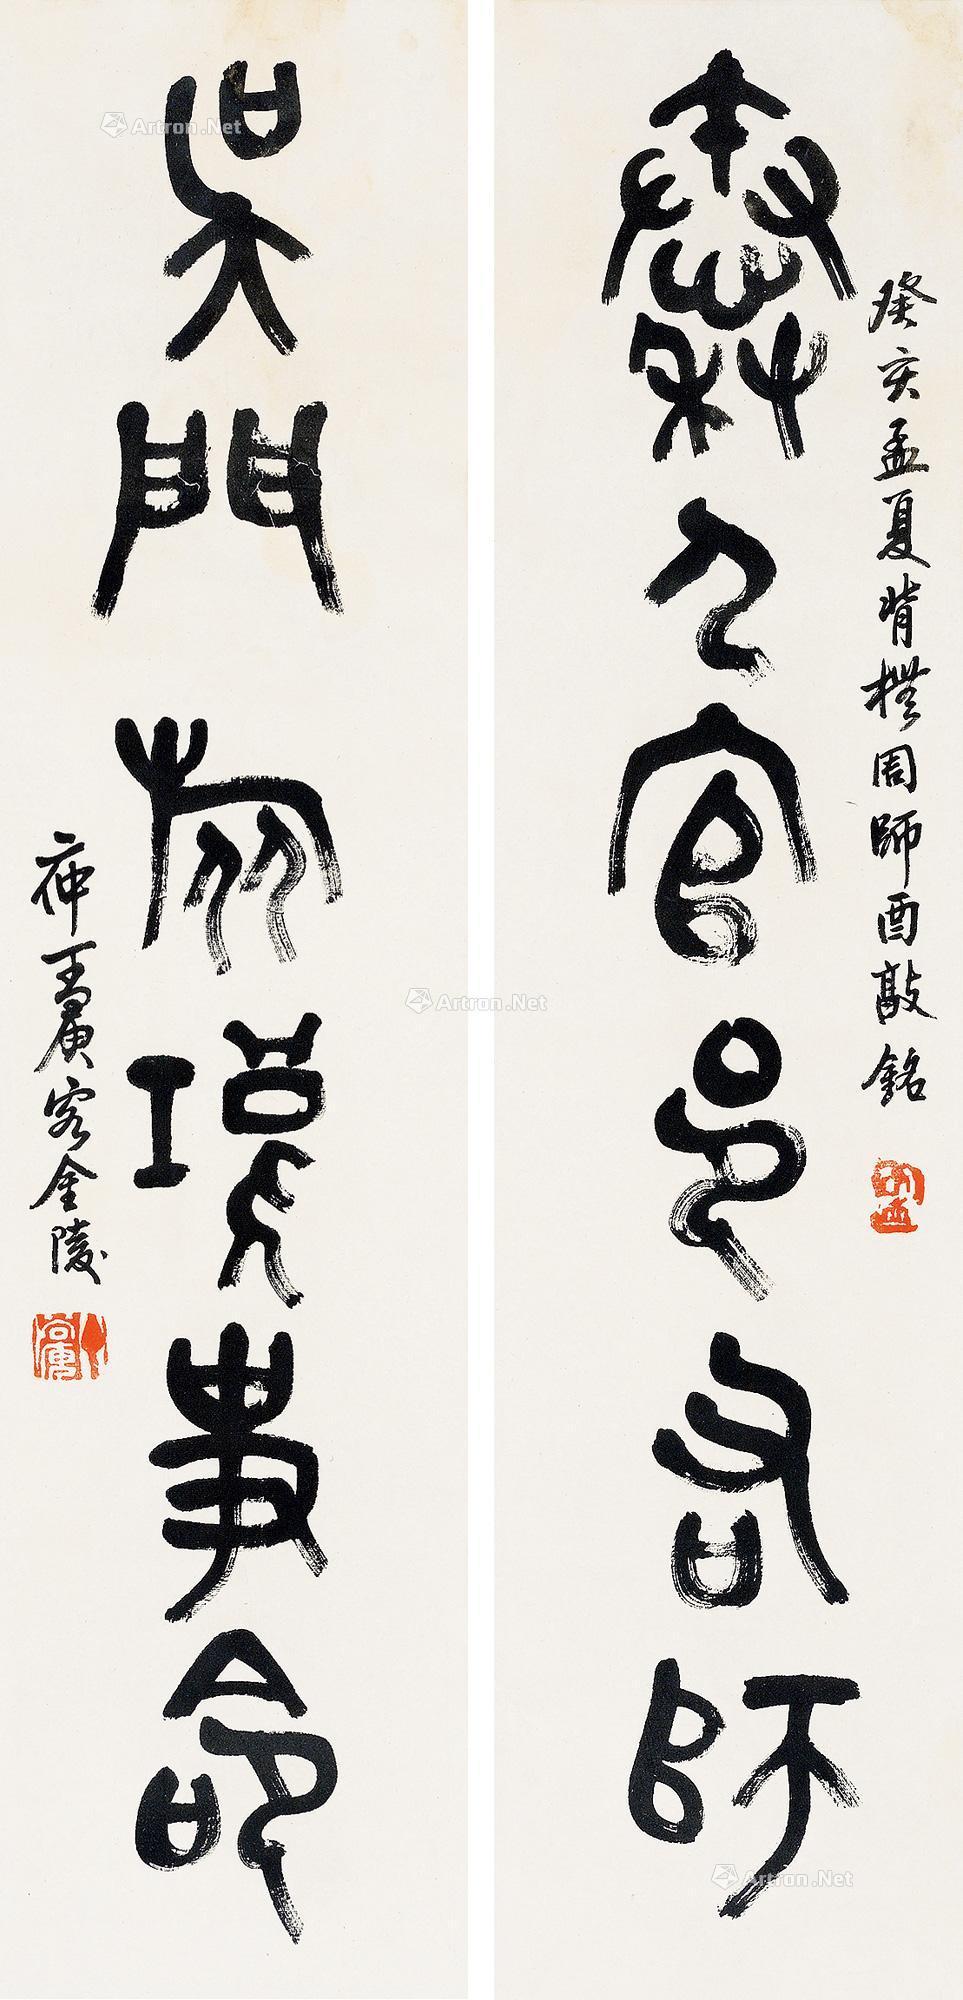 5cm×2 作品分类 中国书画>书法 创作年代  壬寅(1902年)作  估价